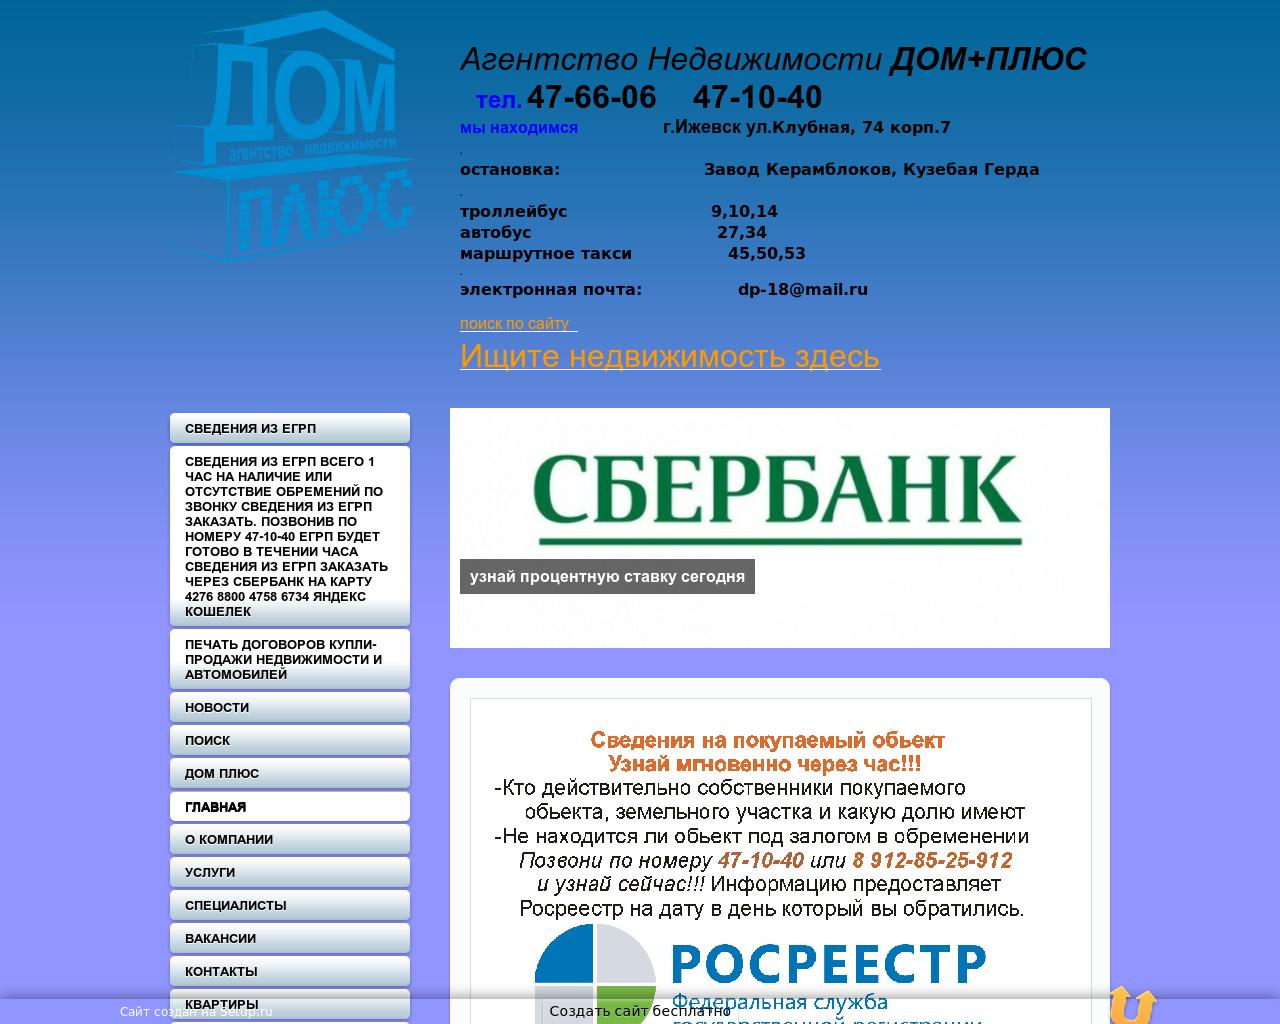 Изображение сайта dp18.ru в разрешении 1280x1024